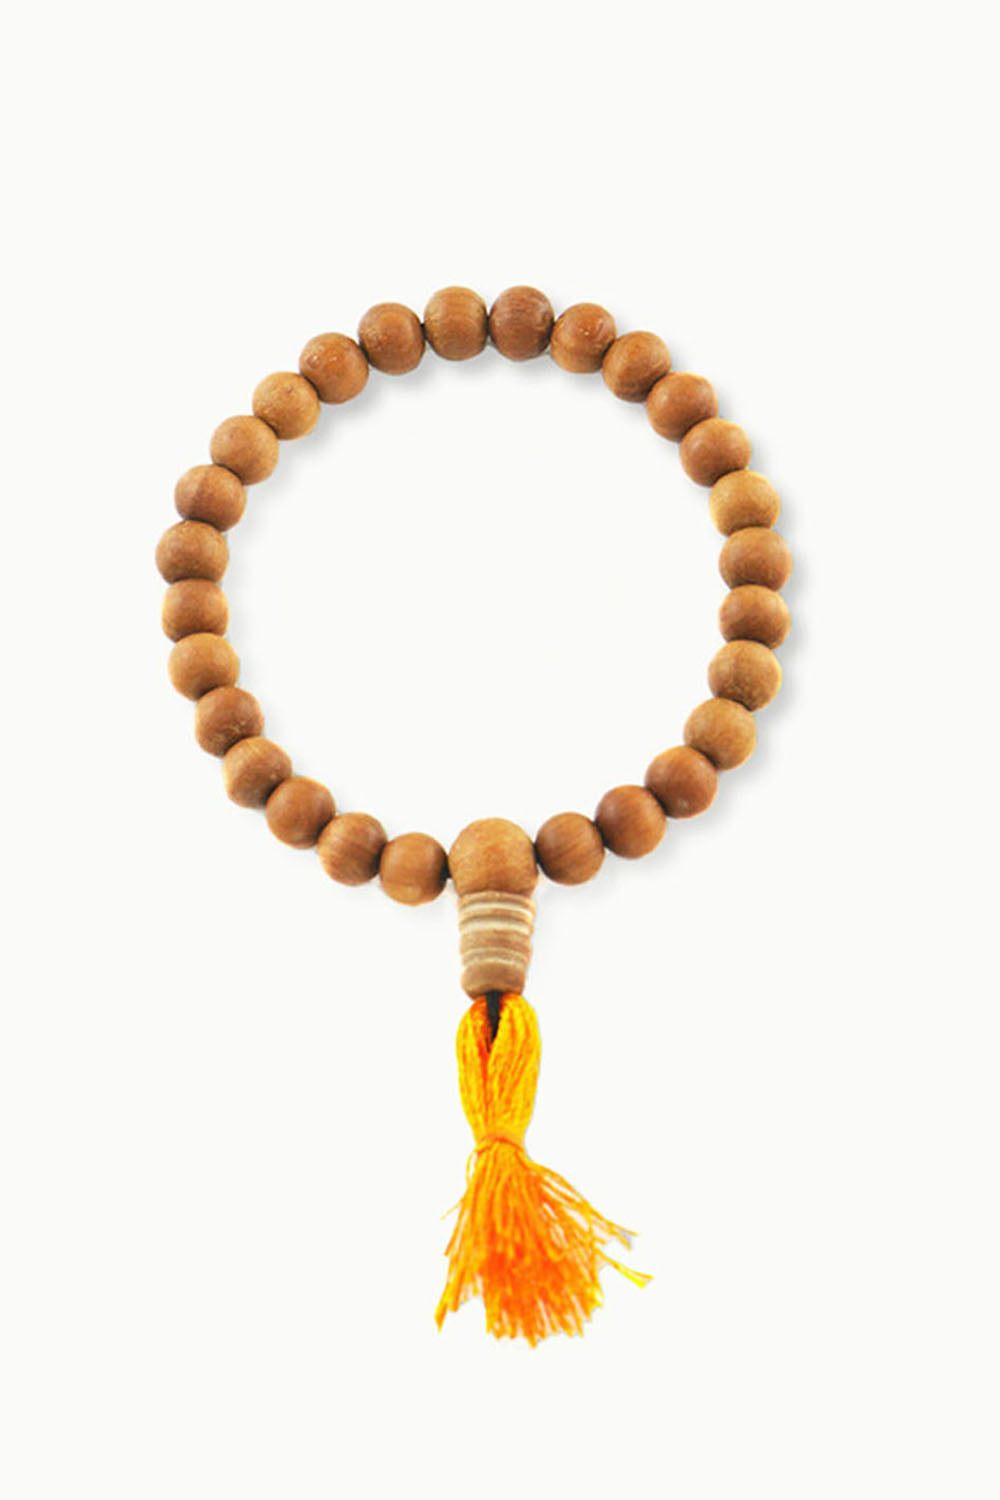 Amazon.com: Mala Beads Counter, Buddhist Prayer Bead Mala Counter -  Buddhist Mala Counter Clip, Buddhist Prayer Malas Counter Clips for 108 Beads  Mala, Meditation, Pack of 3 : Arts, Crafts & Sewing